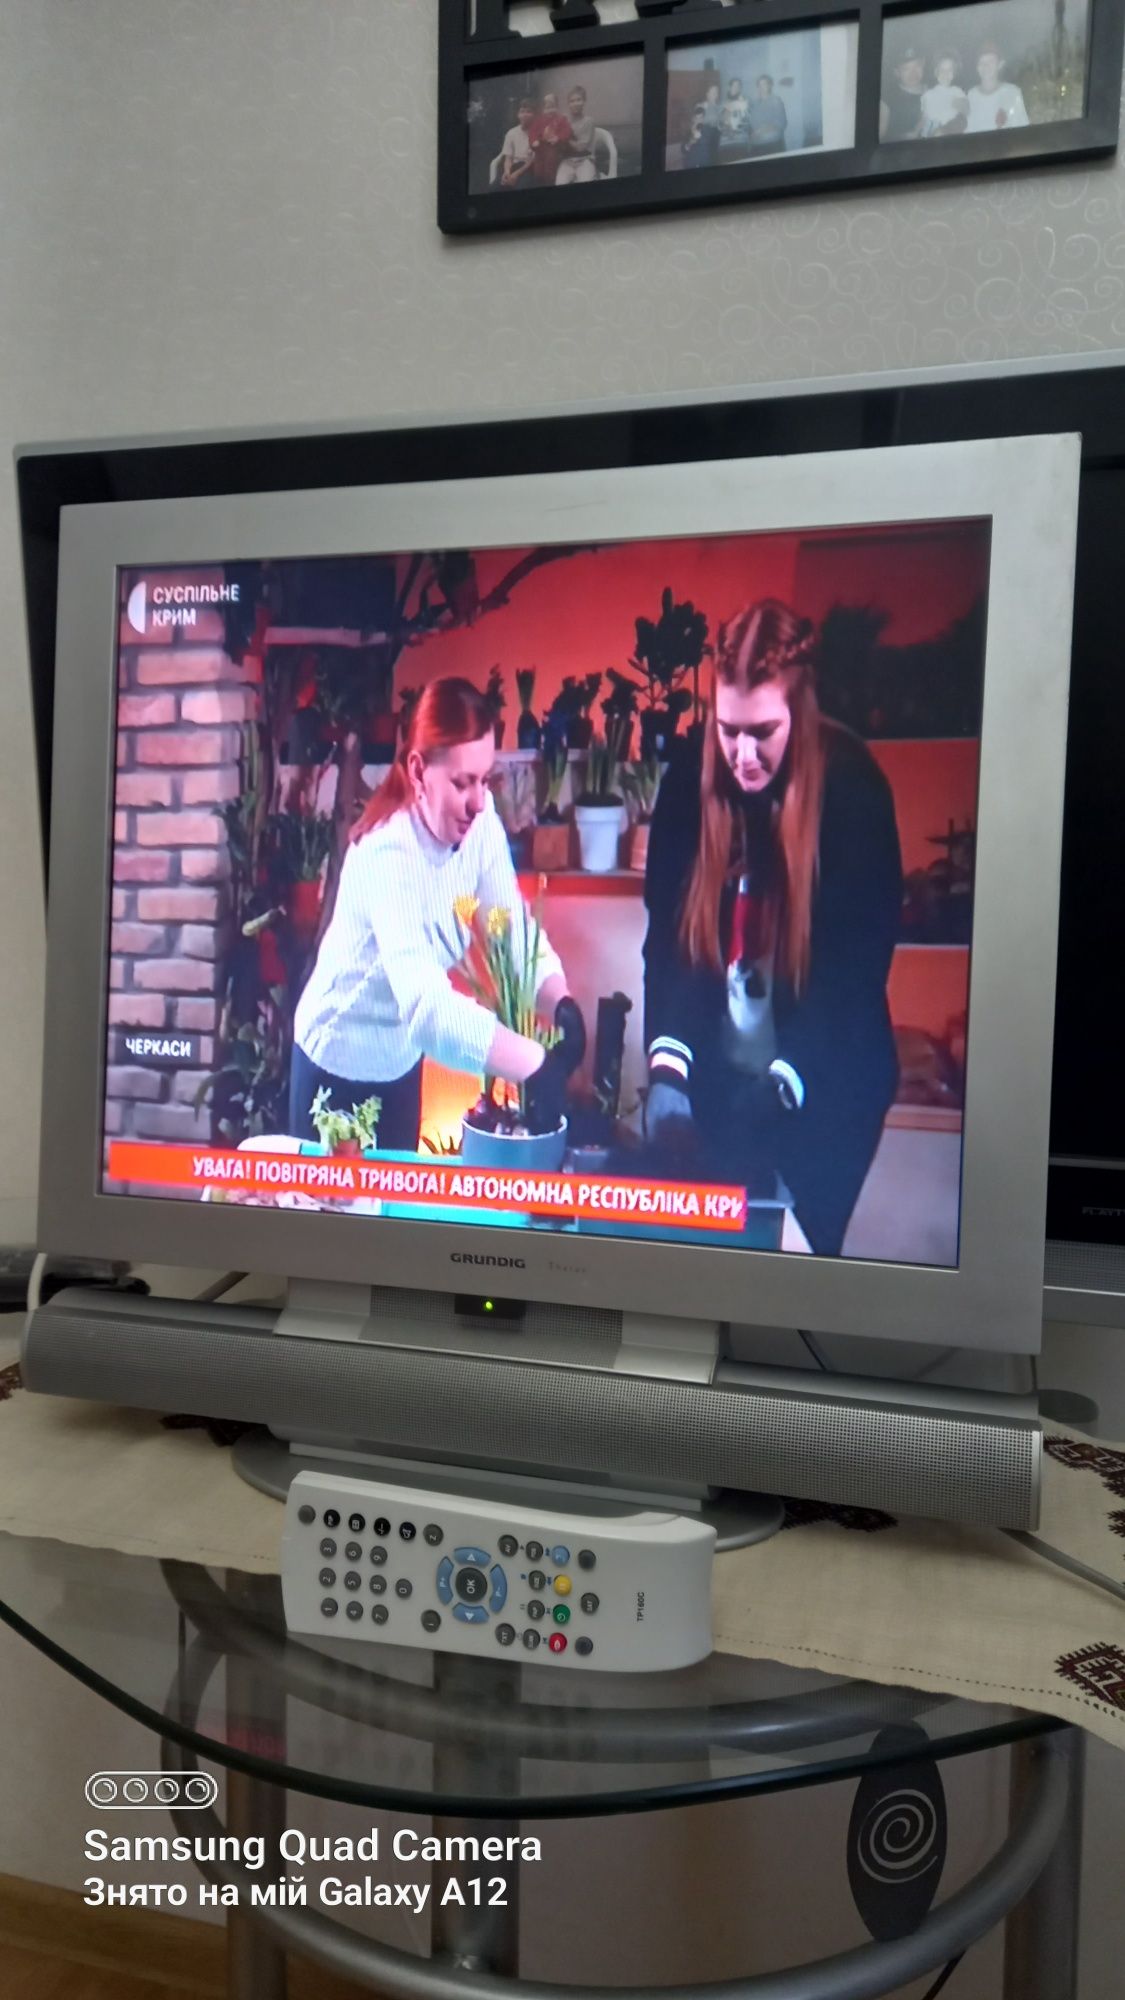 Телевізор GRUNDIG THARUS LCD  51 (21")